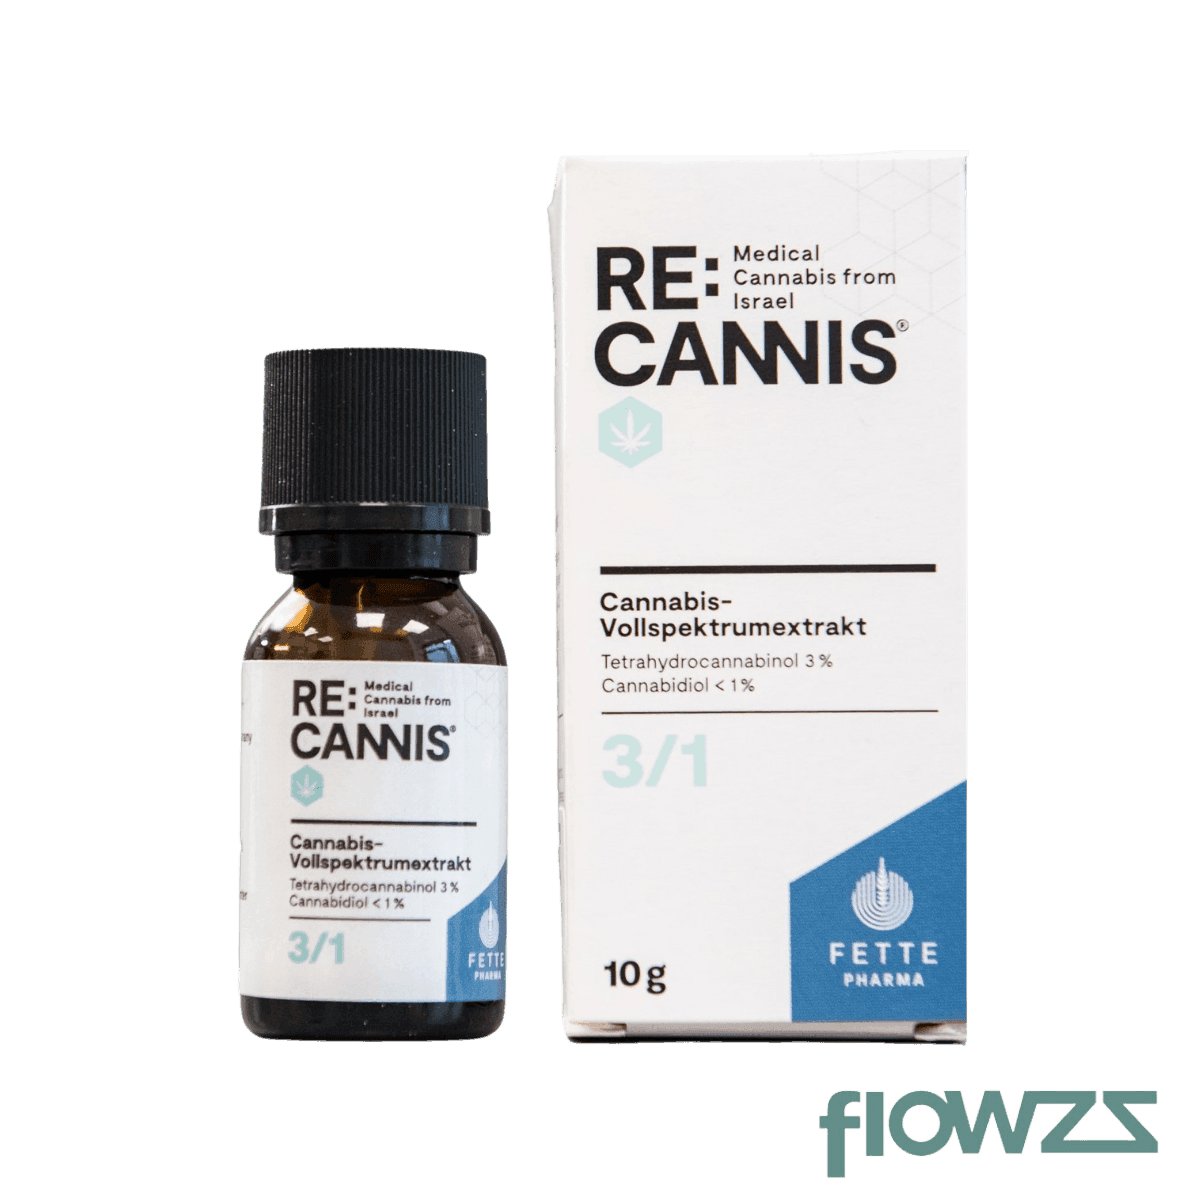 RE:CANNIS 3/1 (Cannabisextrakt) - flowzz.com Preisvergleich